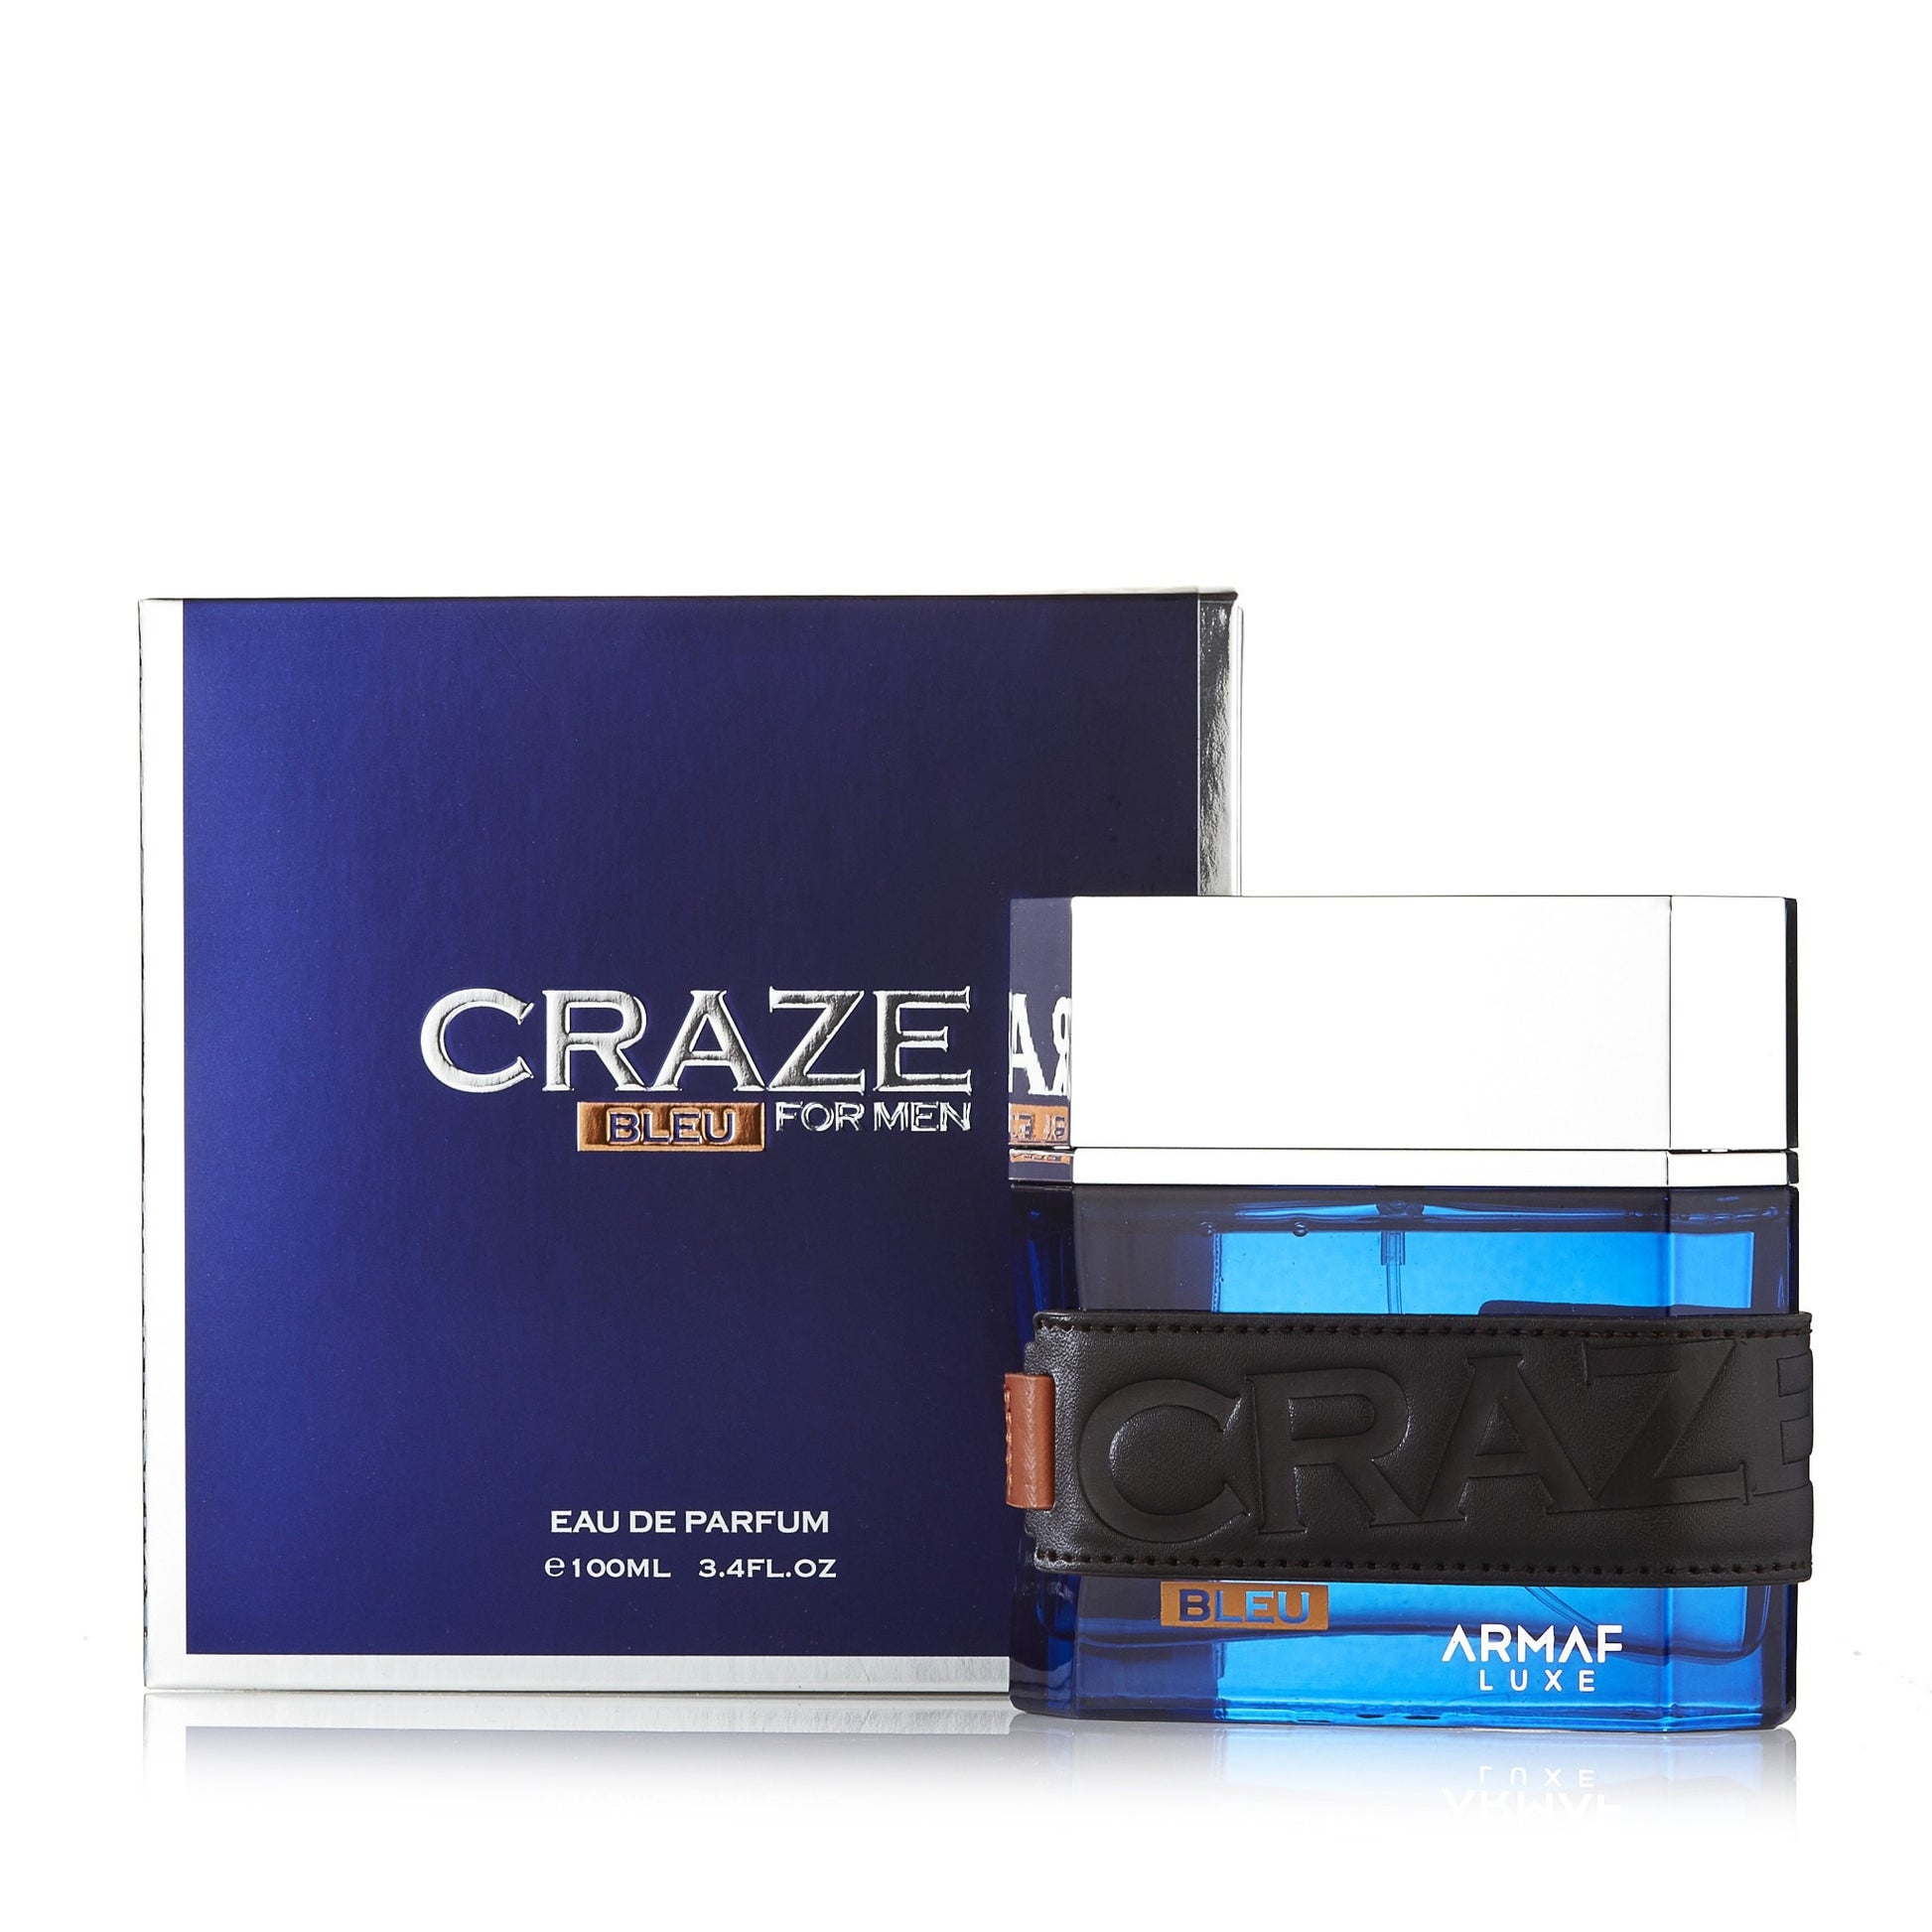 Craze Bleu Eau de Parfum Spray for Men, Product image 2